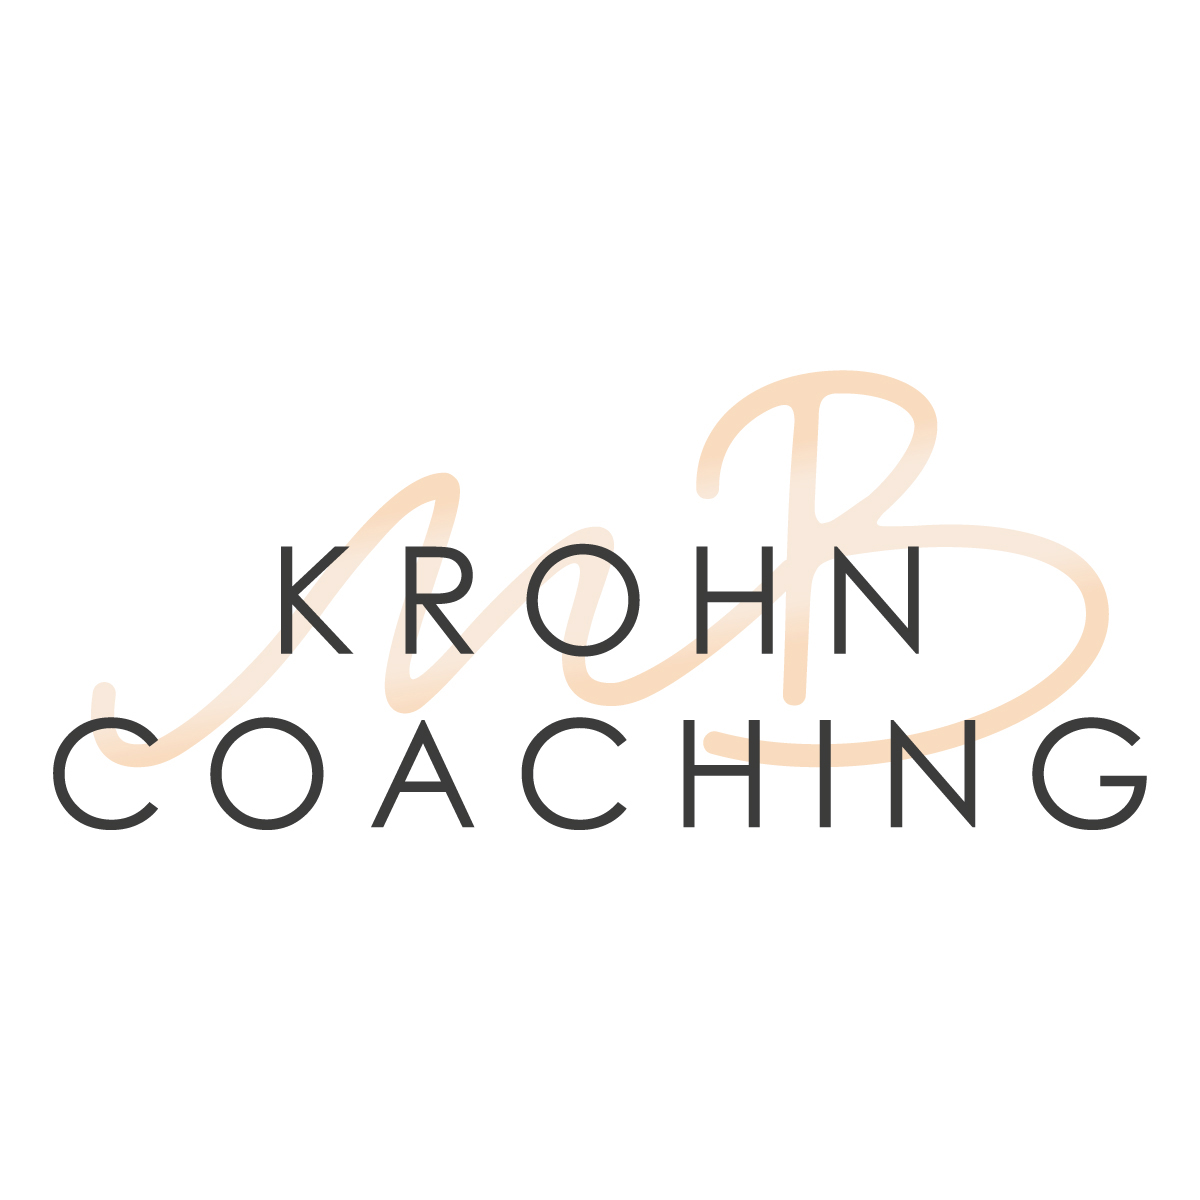 Krohn Coaching